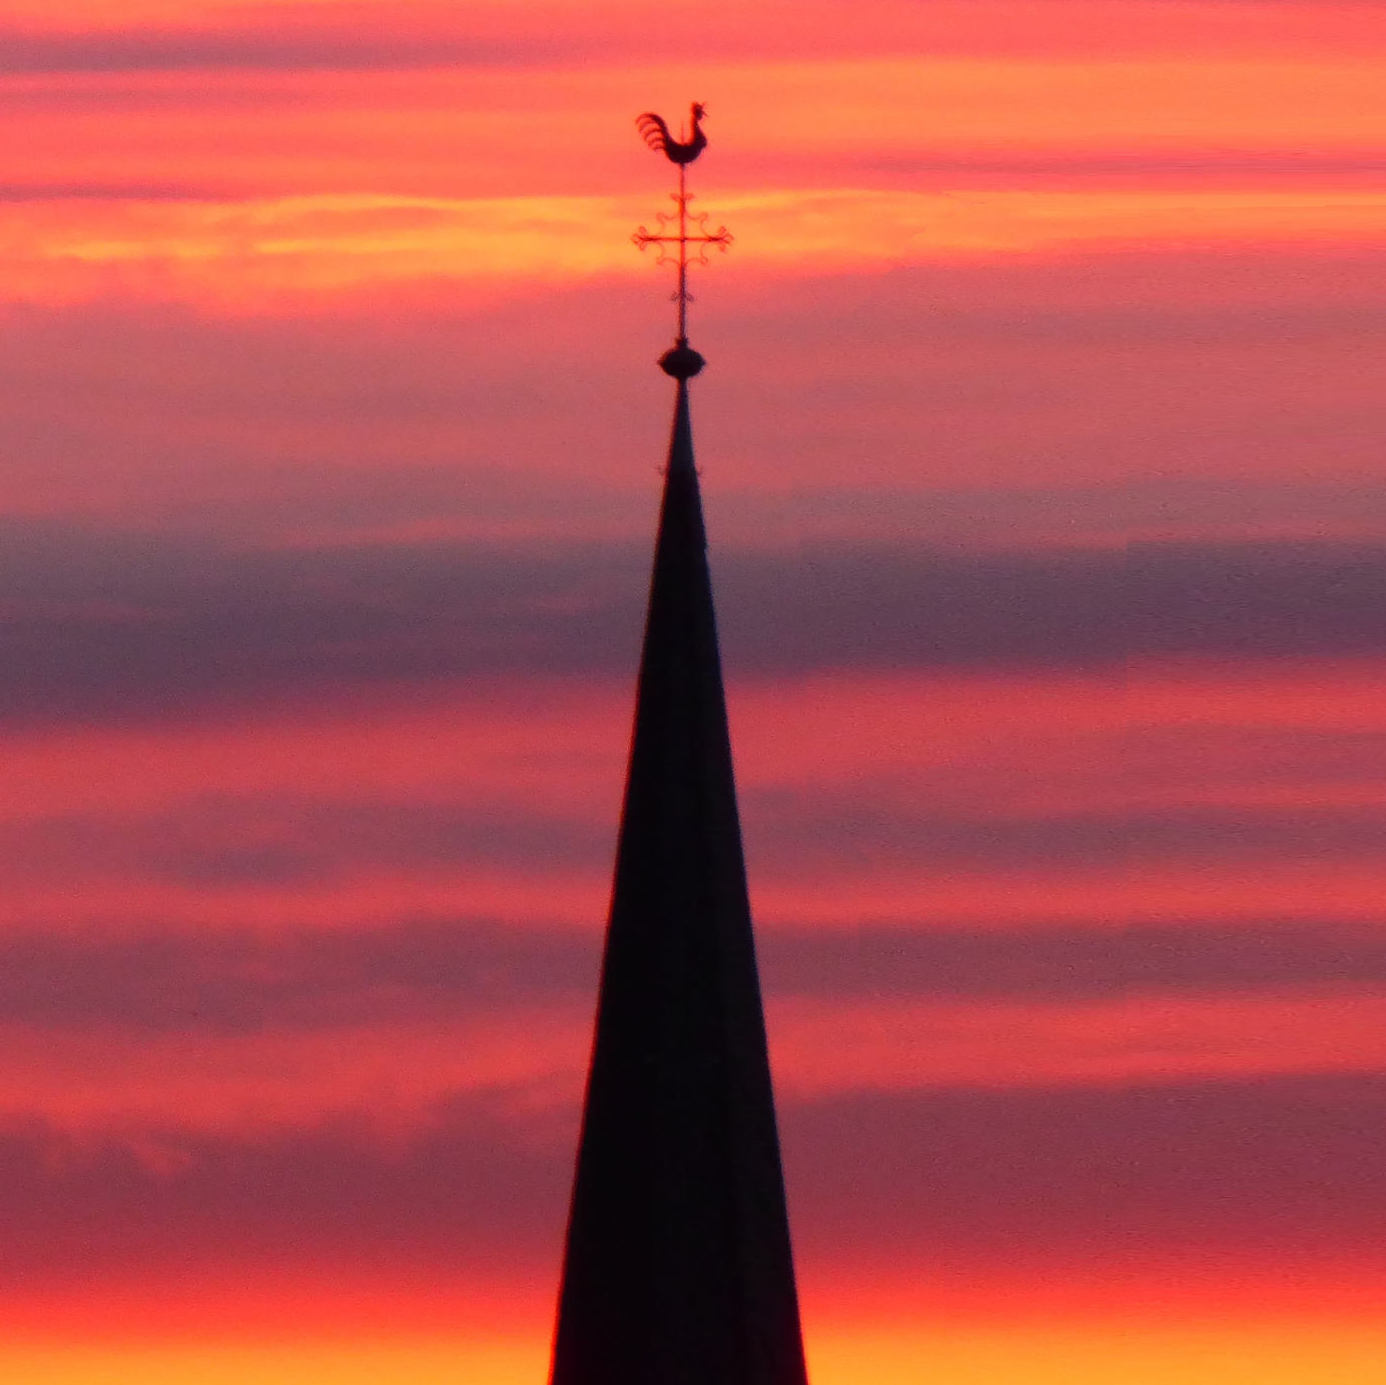 Morgenrot leuchtet über St. Bonifatius - ein Zeichen des Himmels? (c) bg '20